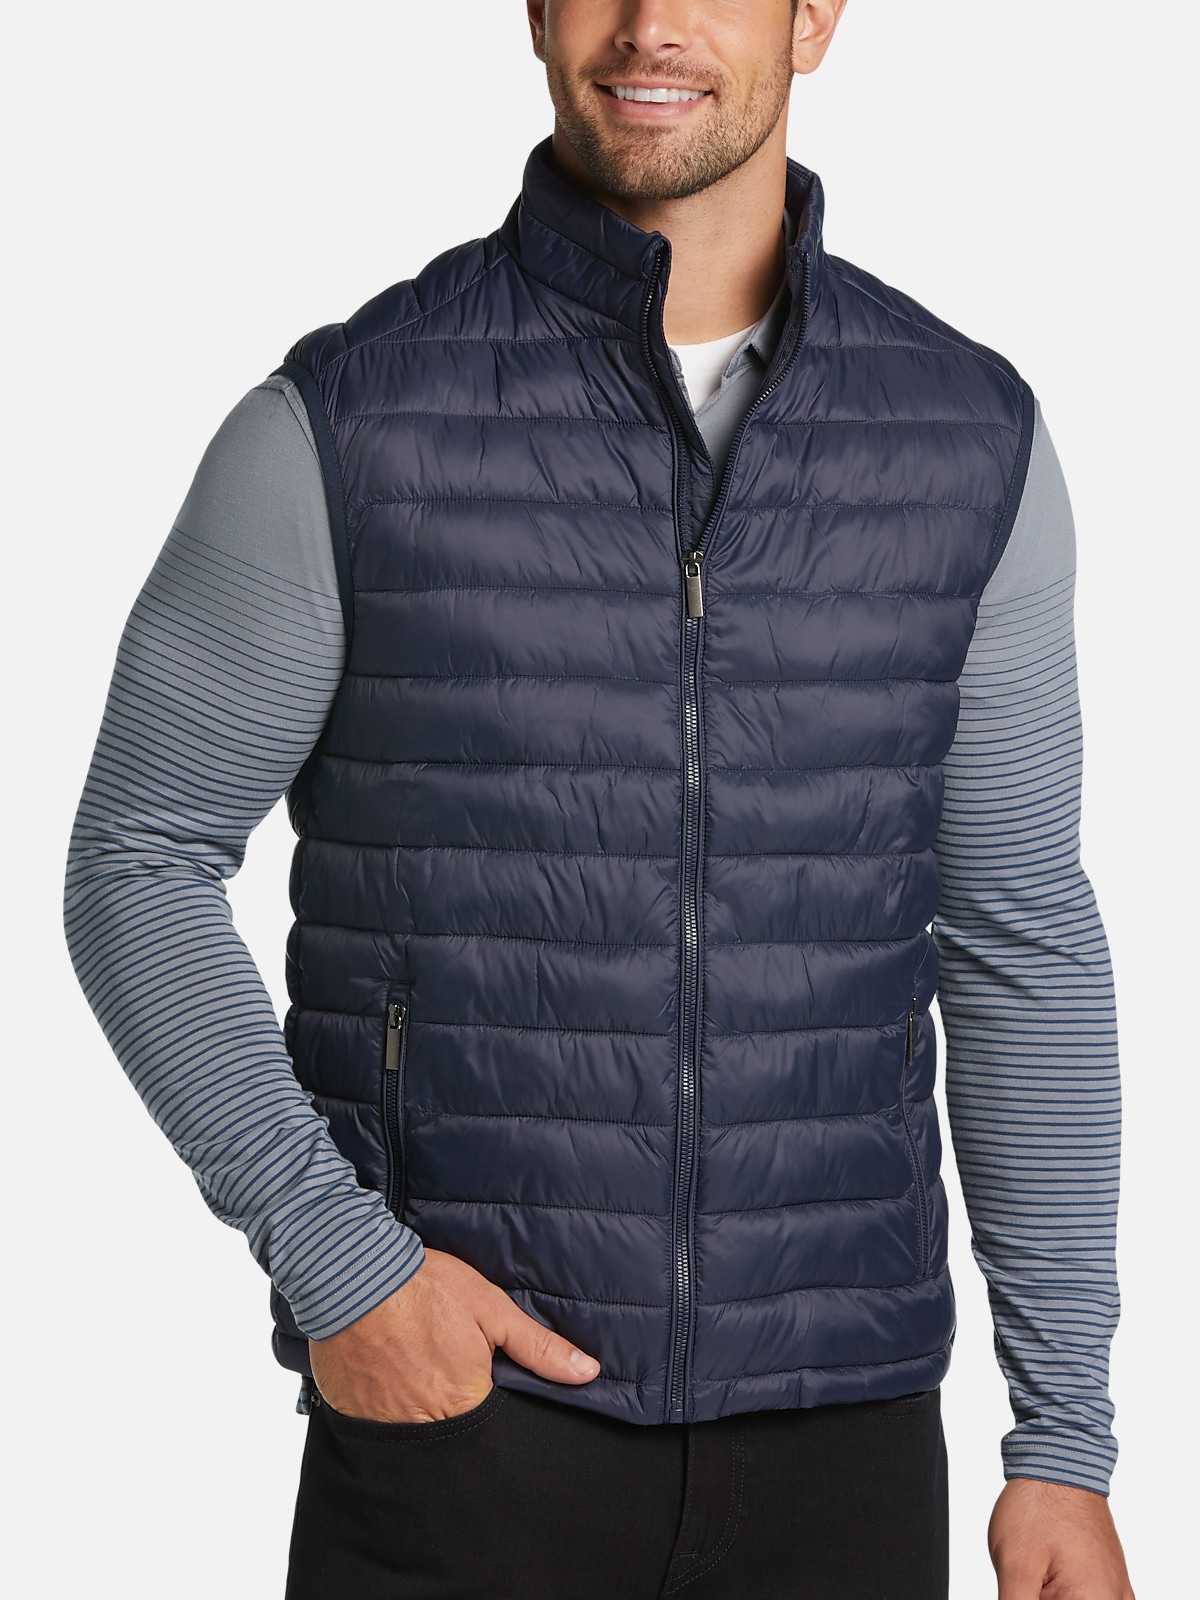 Awearness Kenneth Cole Modern Fit Puffer Vest | All Sale| Men's Wearhouse